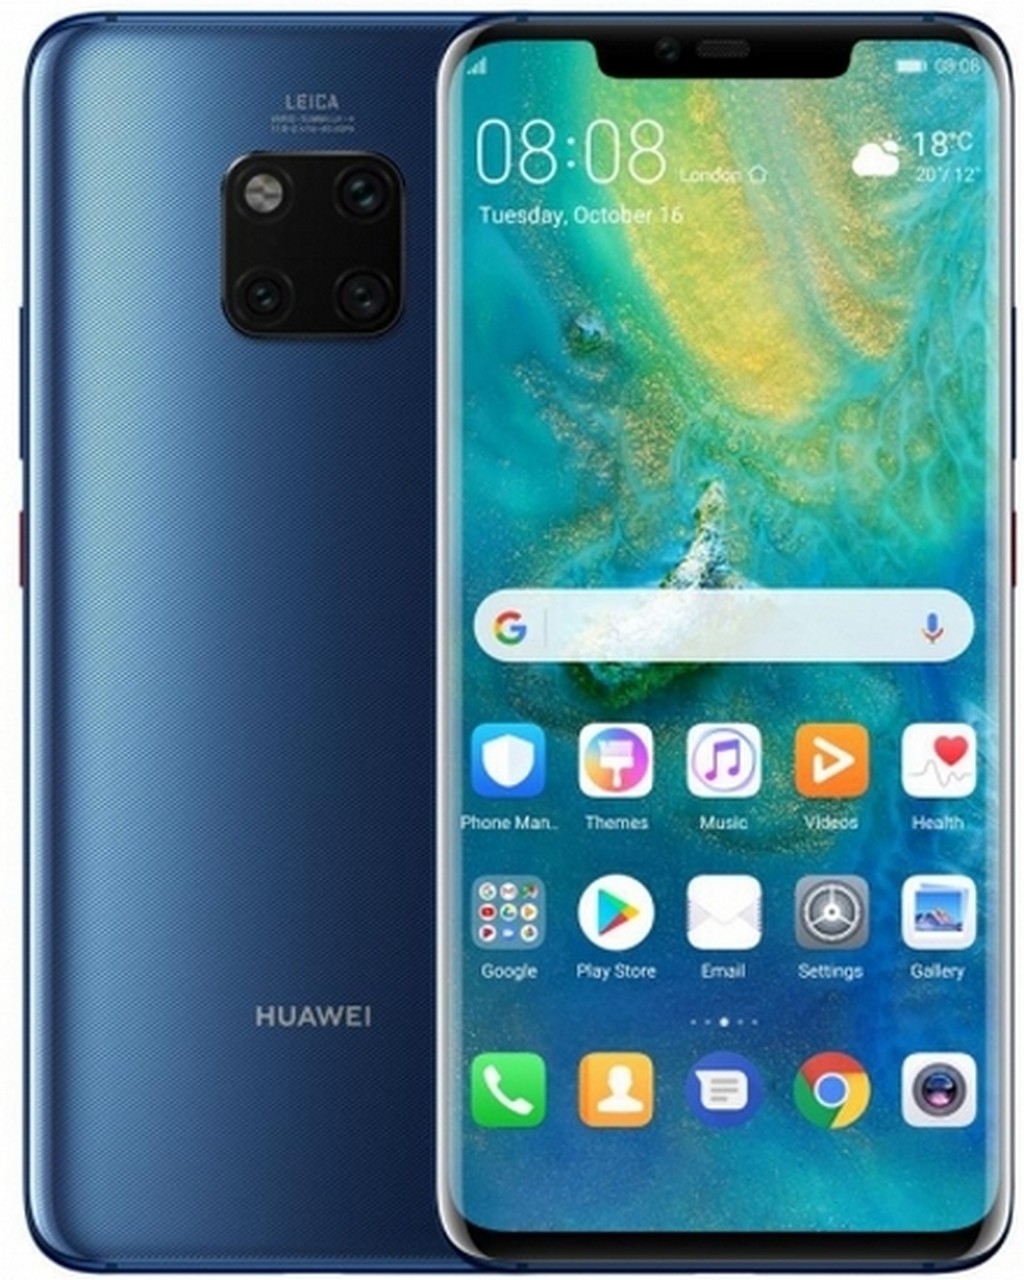 Huawei Mate 20 i Mate 20 Pro